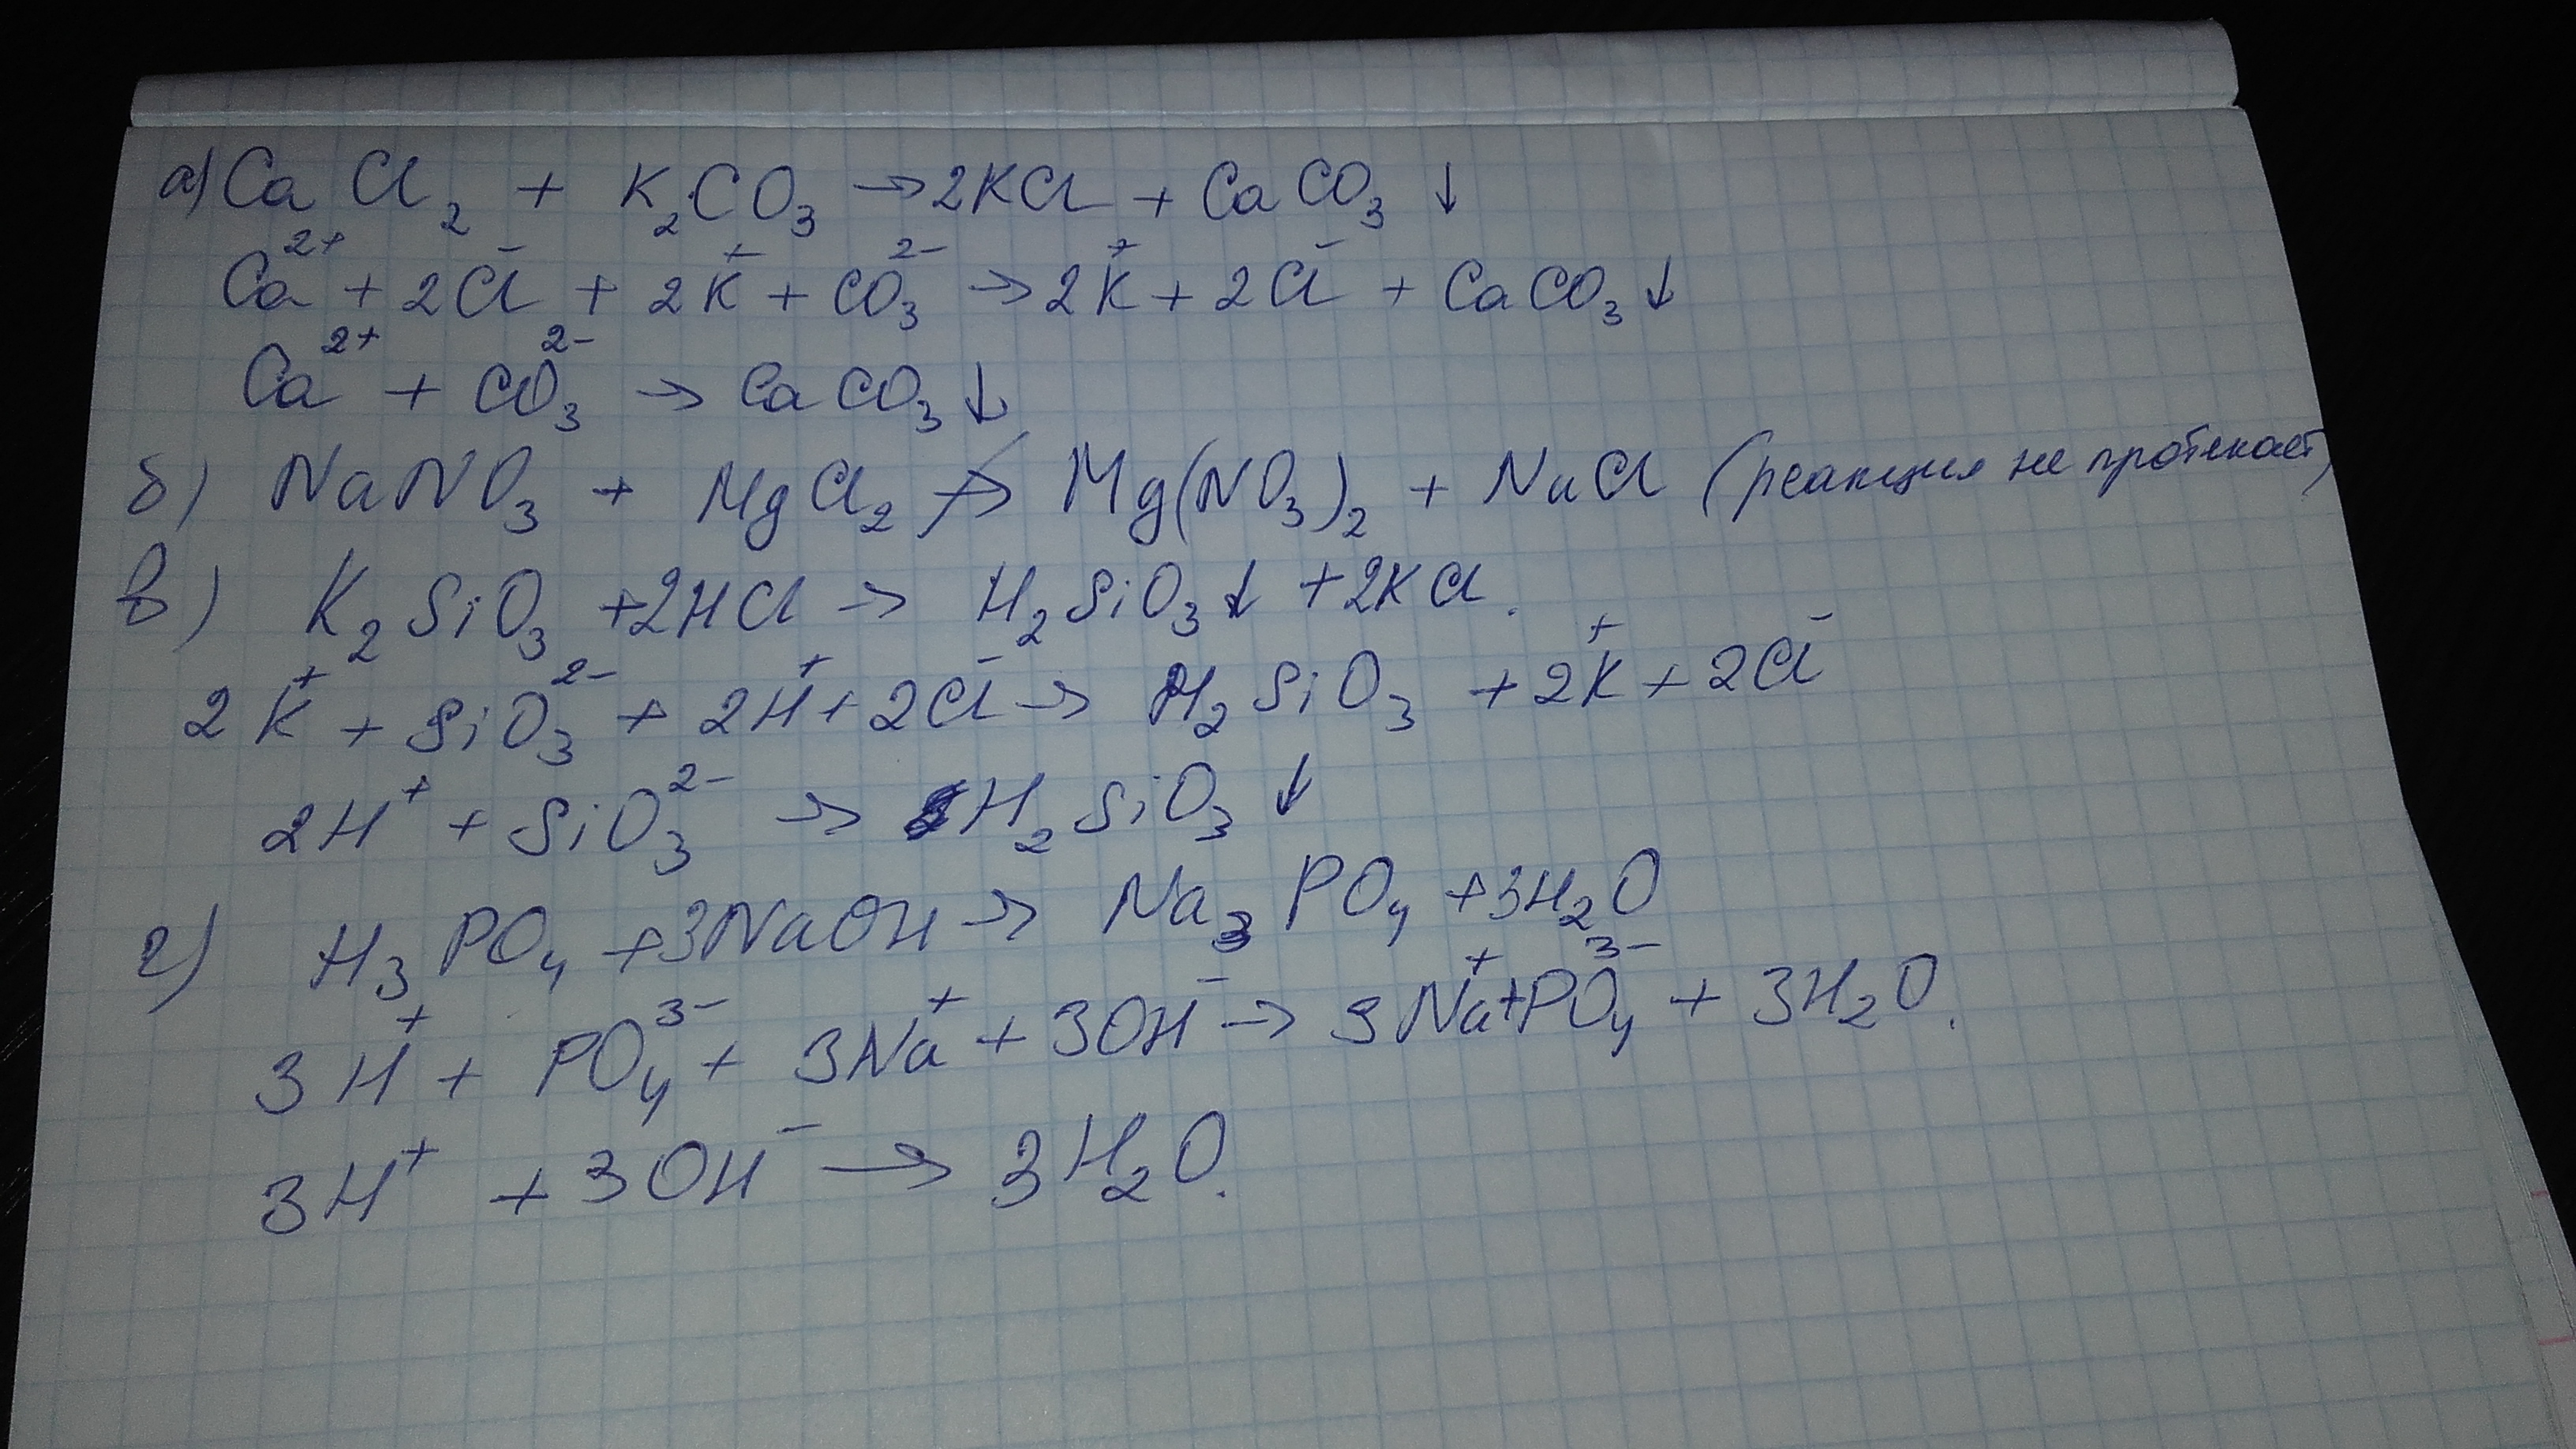 Caco3 hcl полное ионное. Составьте полное и сокращенное ионное уравнение реакции h3po4 + k2co3. Пооное и сокращенное ионномалекулярное уравнение k2co3+HCL. K2co3 HCL ионное уравнение полное и сокращенное. Sio2+k2co3 сокращенное ионное уравнение.